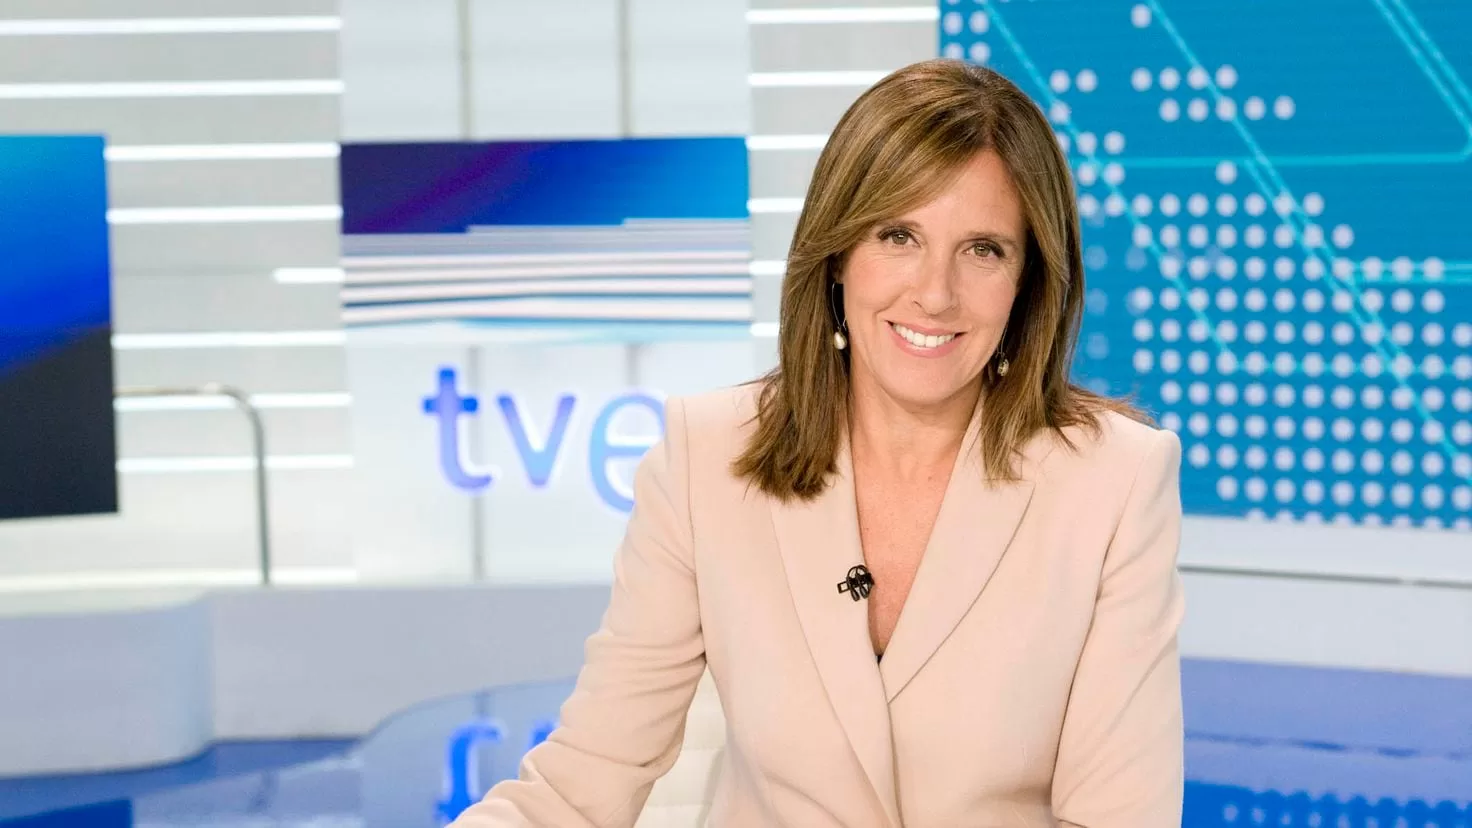 TVE announces the retirement of Ana Blanco
